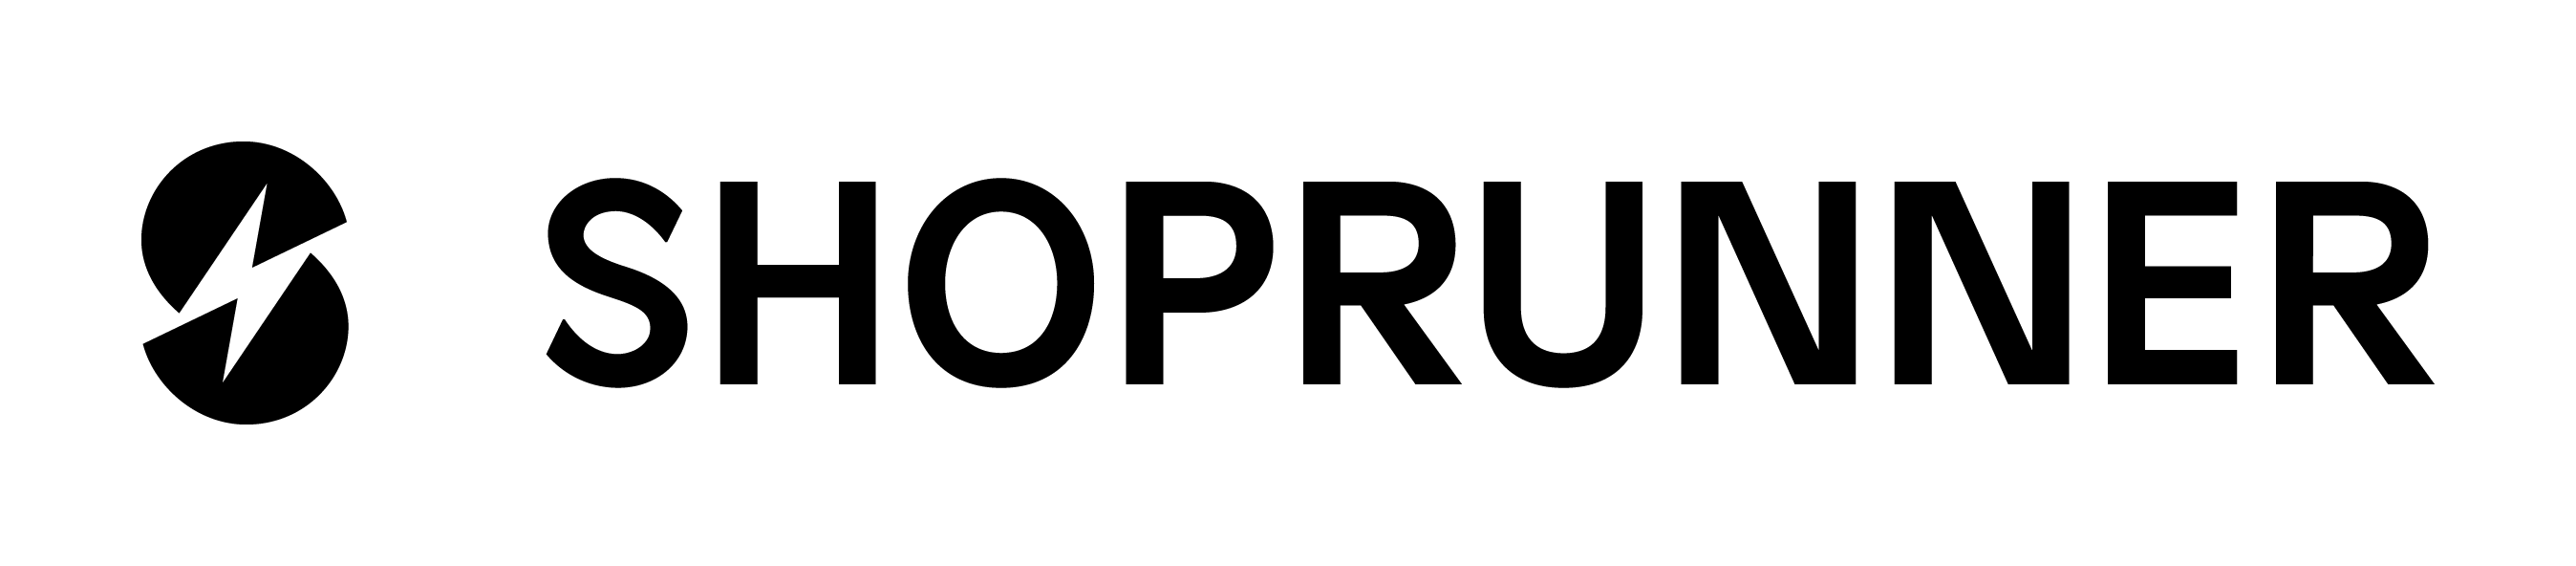 Shoprunner logo